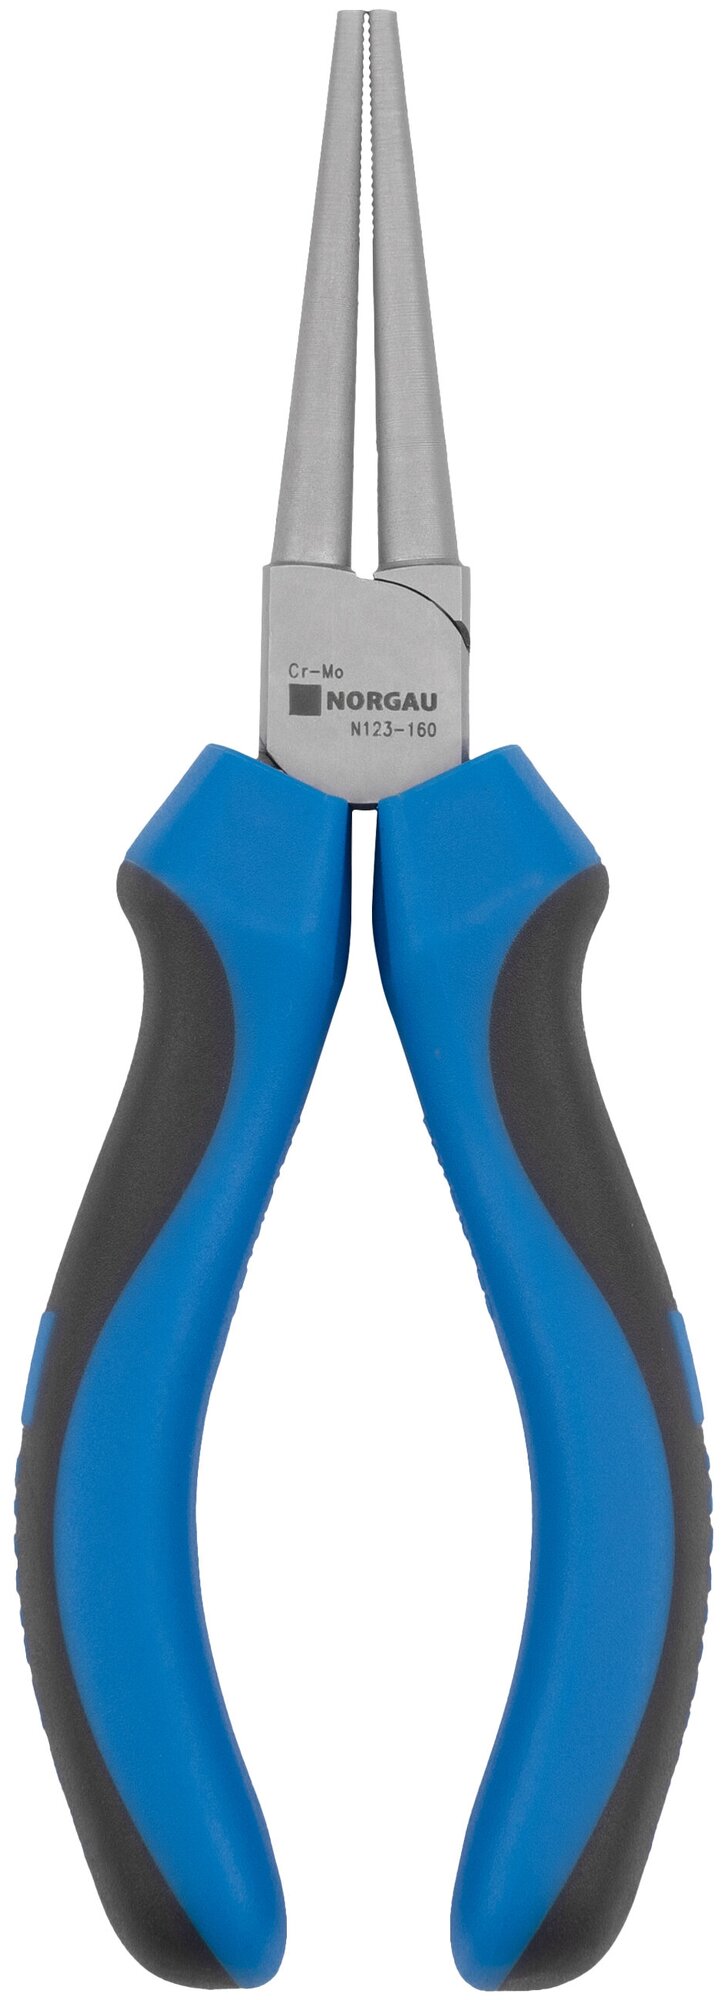 Круглогубцы NORGAU Industrial из Cr-Mo стали с двухкомпонентными рукоятками и диаметром губок 2.5 мм профессиональные длина 160 мм